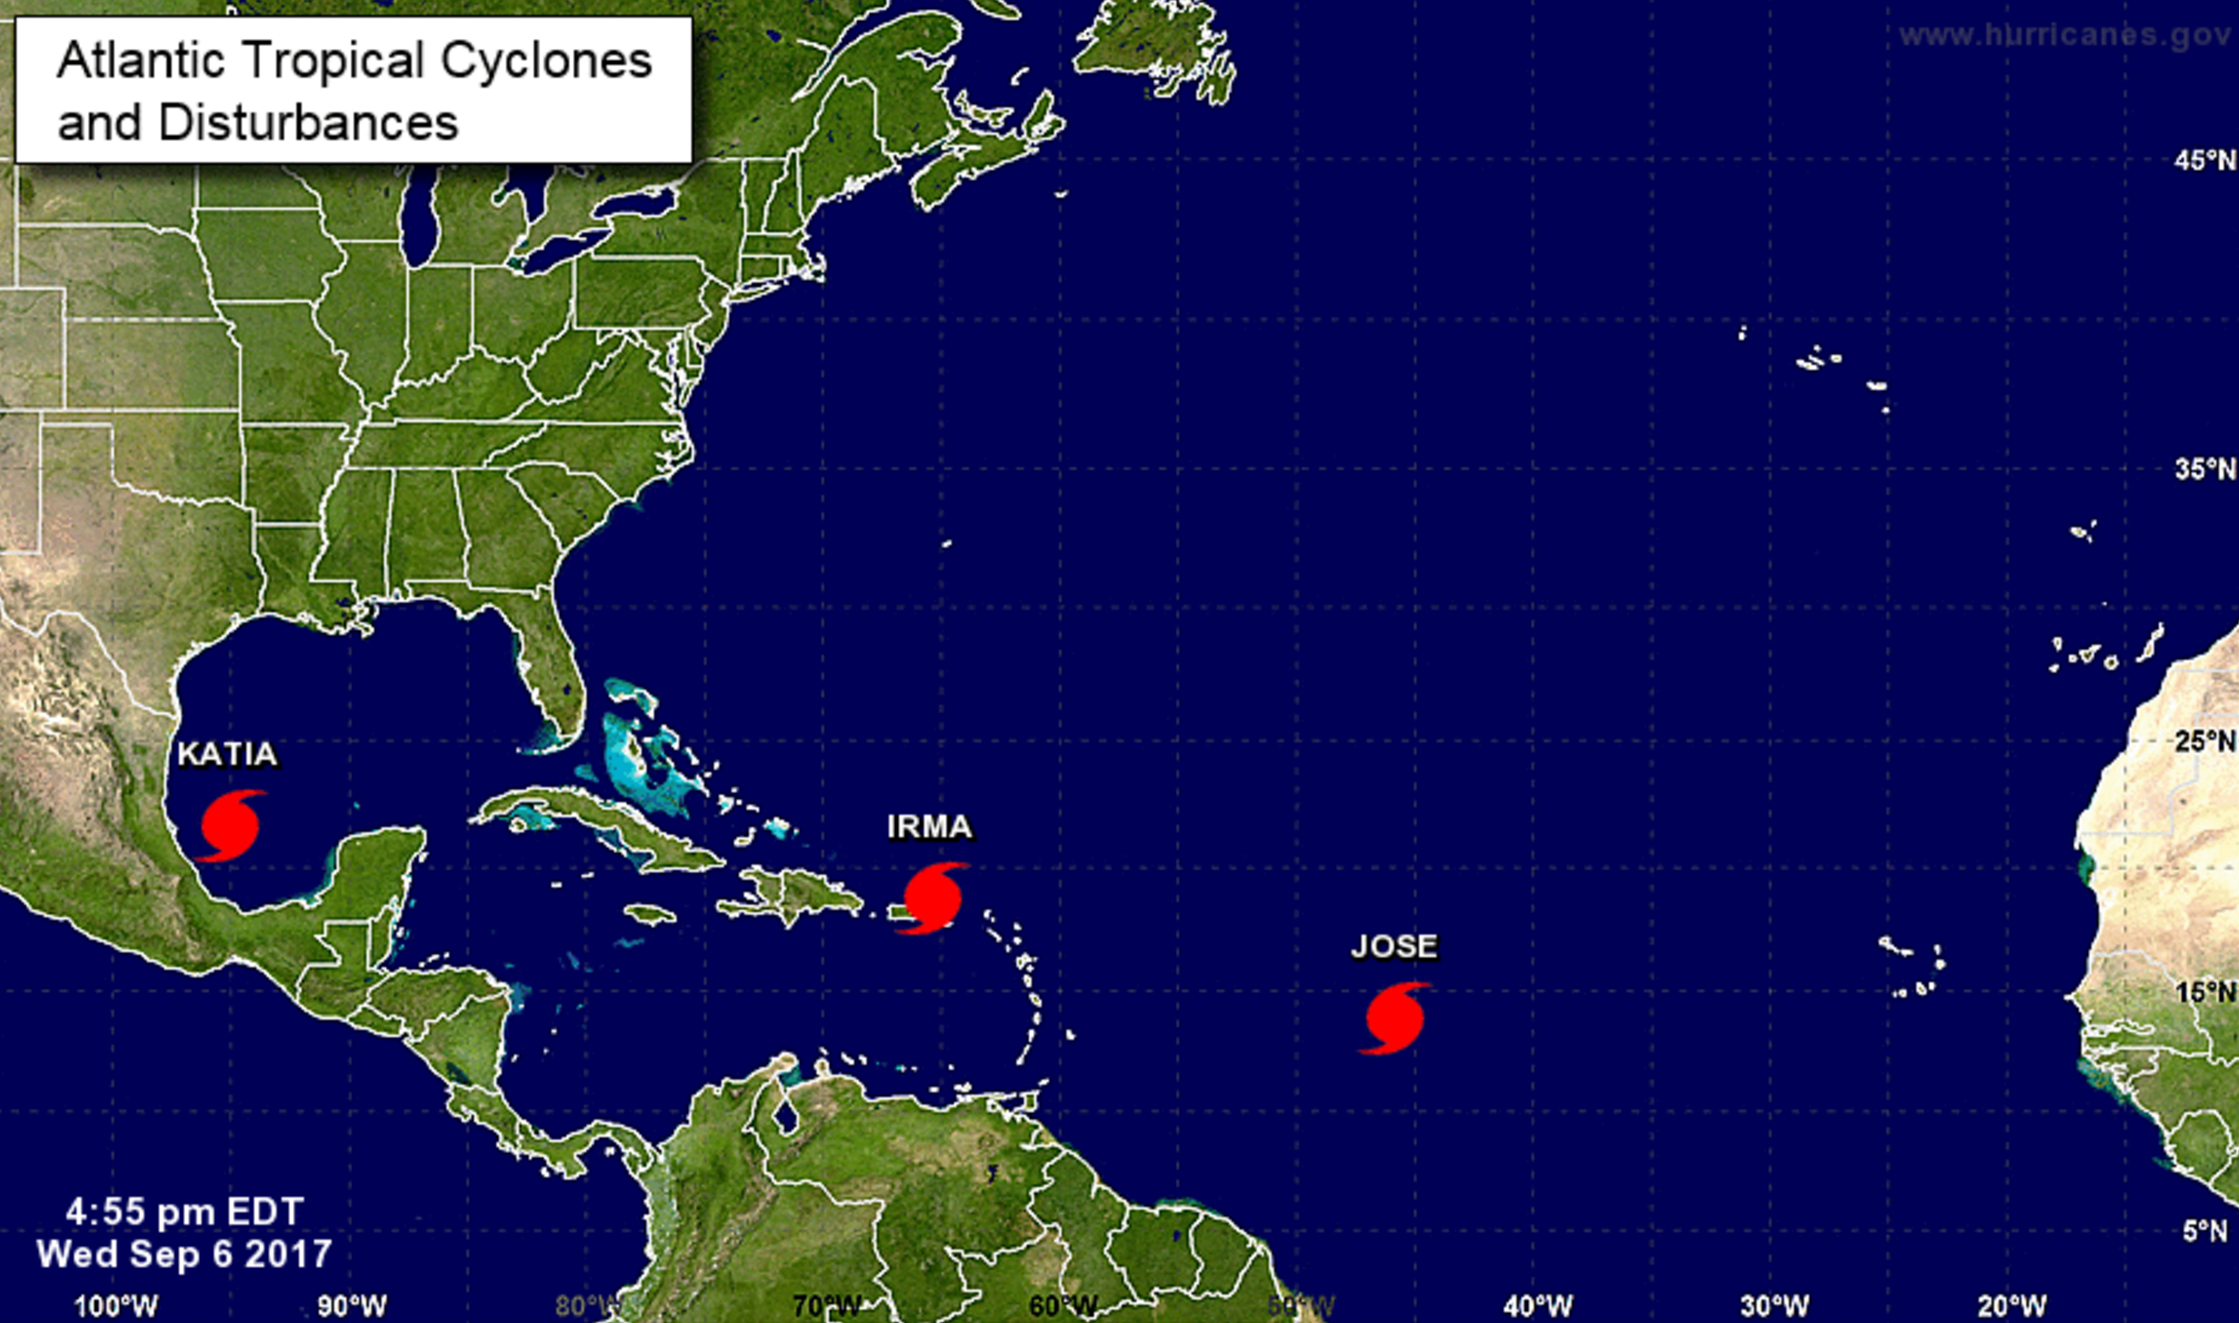 Hurricanes Katia, Irma, and Jose.